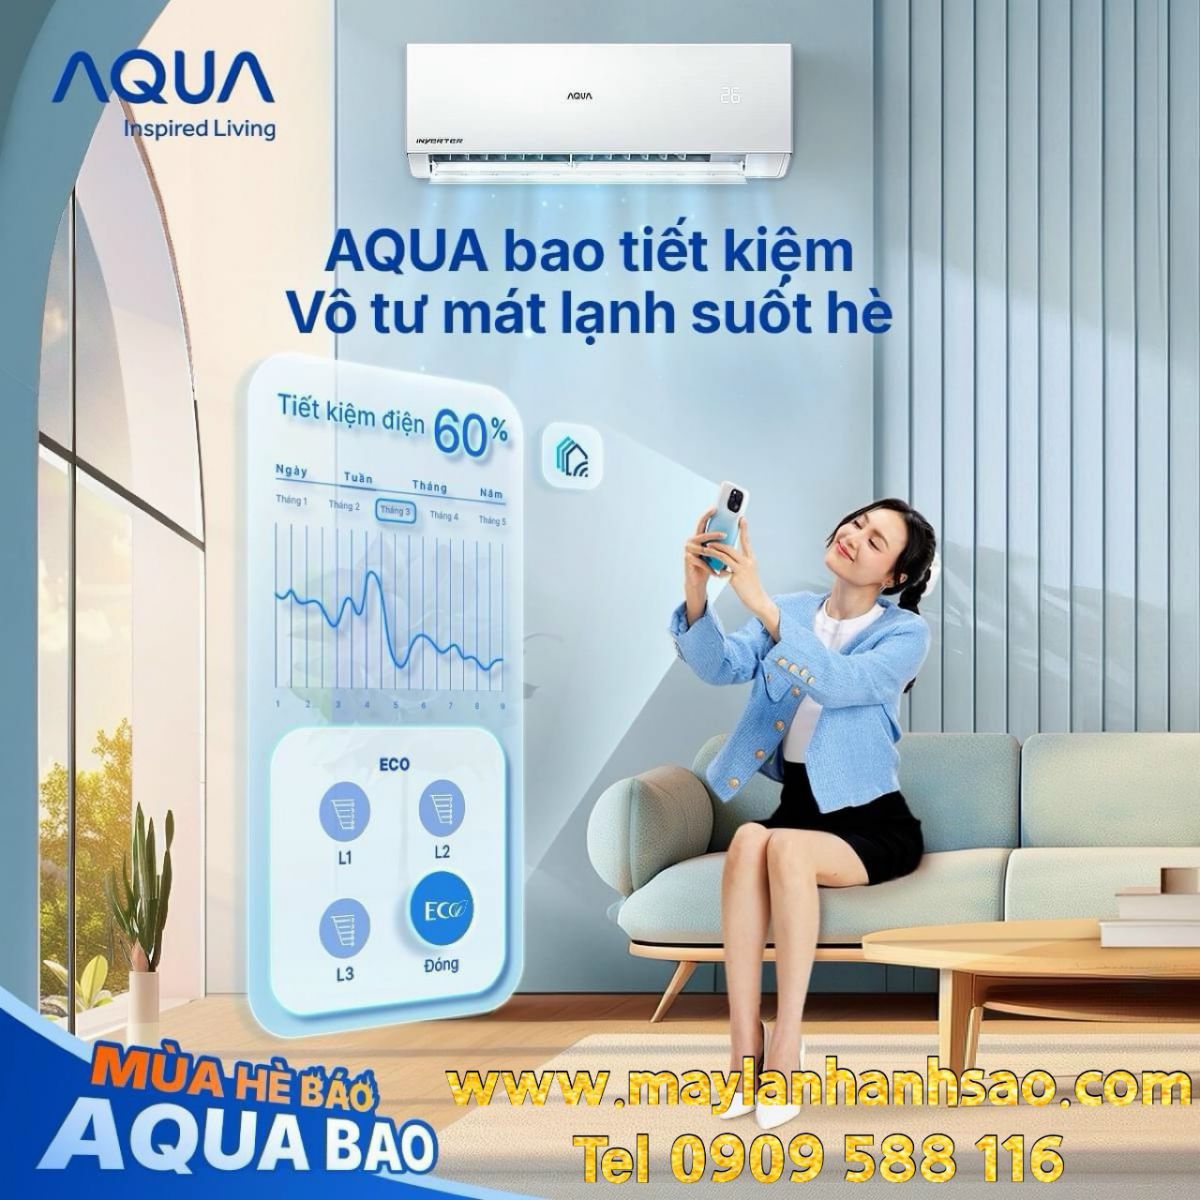 Máy Lạnh Aqua - Comfee - 2 Thương Hiệu Giá Rẻ Chất Lượng